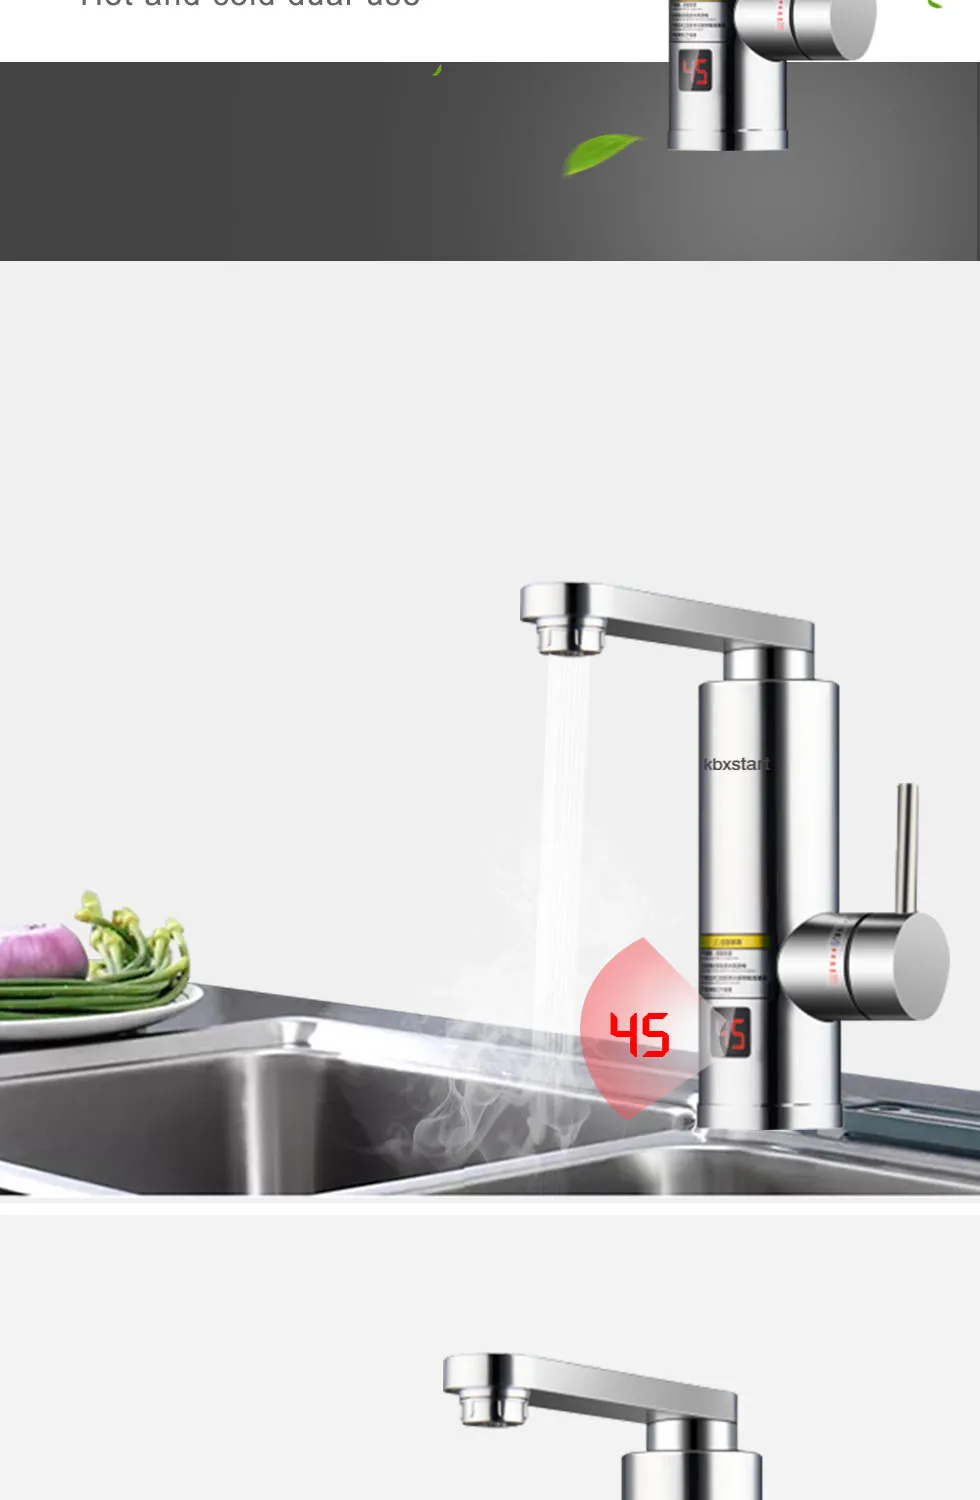 Kbxstart кухня Keuken мгновенный Электрический водонагреватель кран ванная светодио дный светодиодный кран роскошный дизайн 3 секунды быстрый